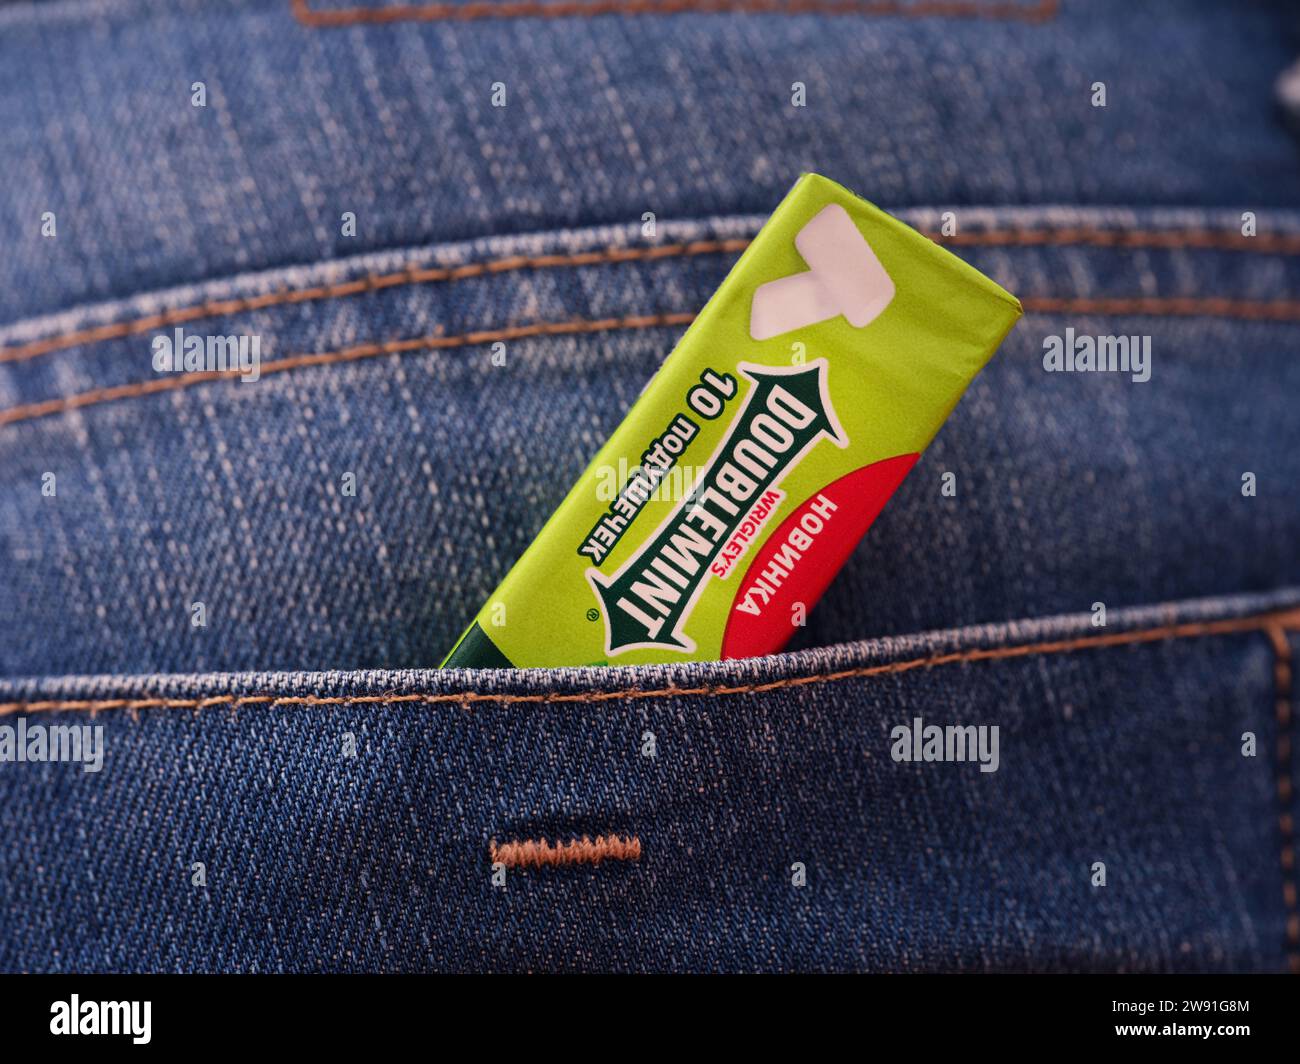 Tambov, Fédération de Russie - 20 décembre 2023 Un paquet vert de chewing-gum Wrigleys Doublemint dans une poche arrière de jeans Banque D'Images